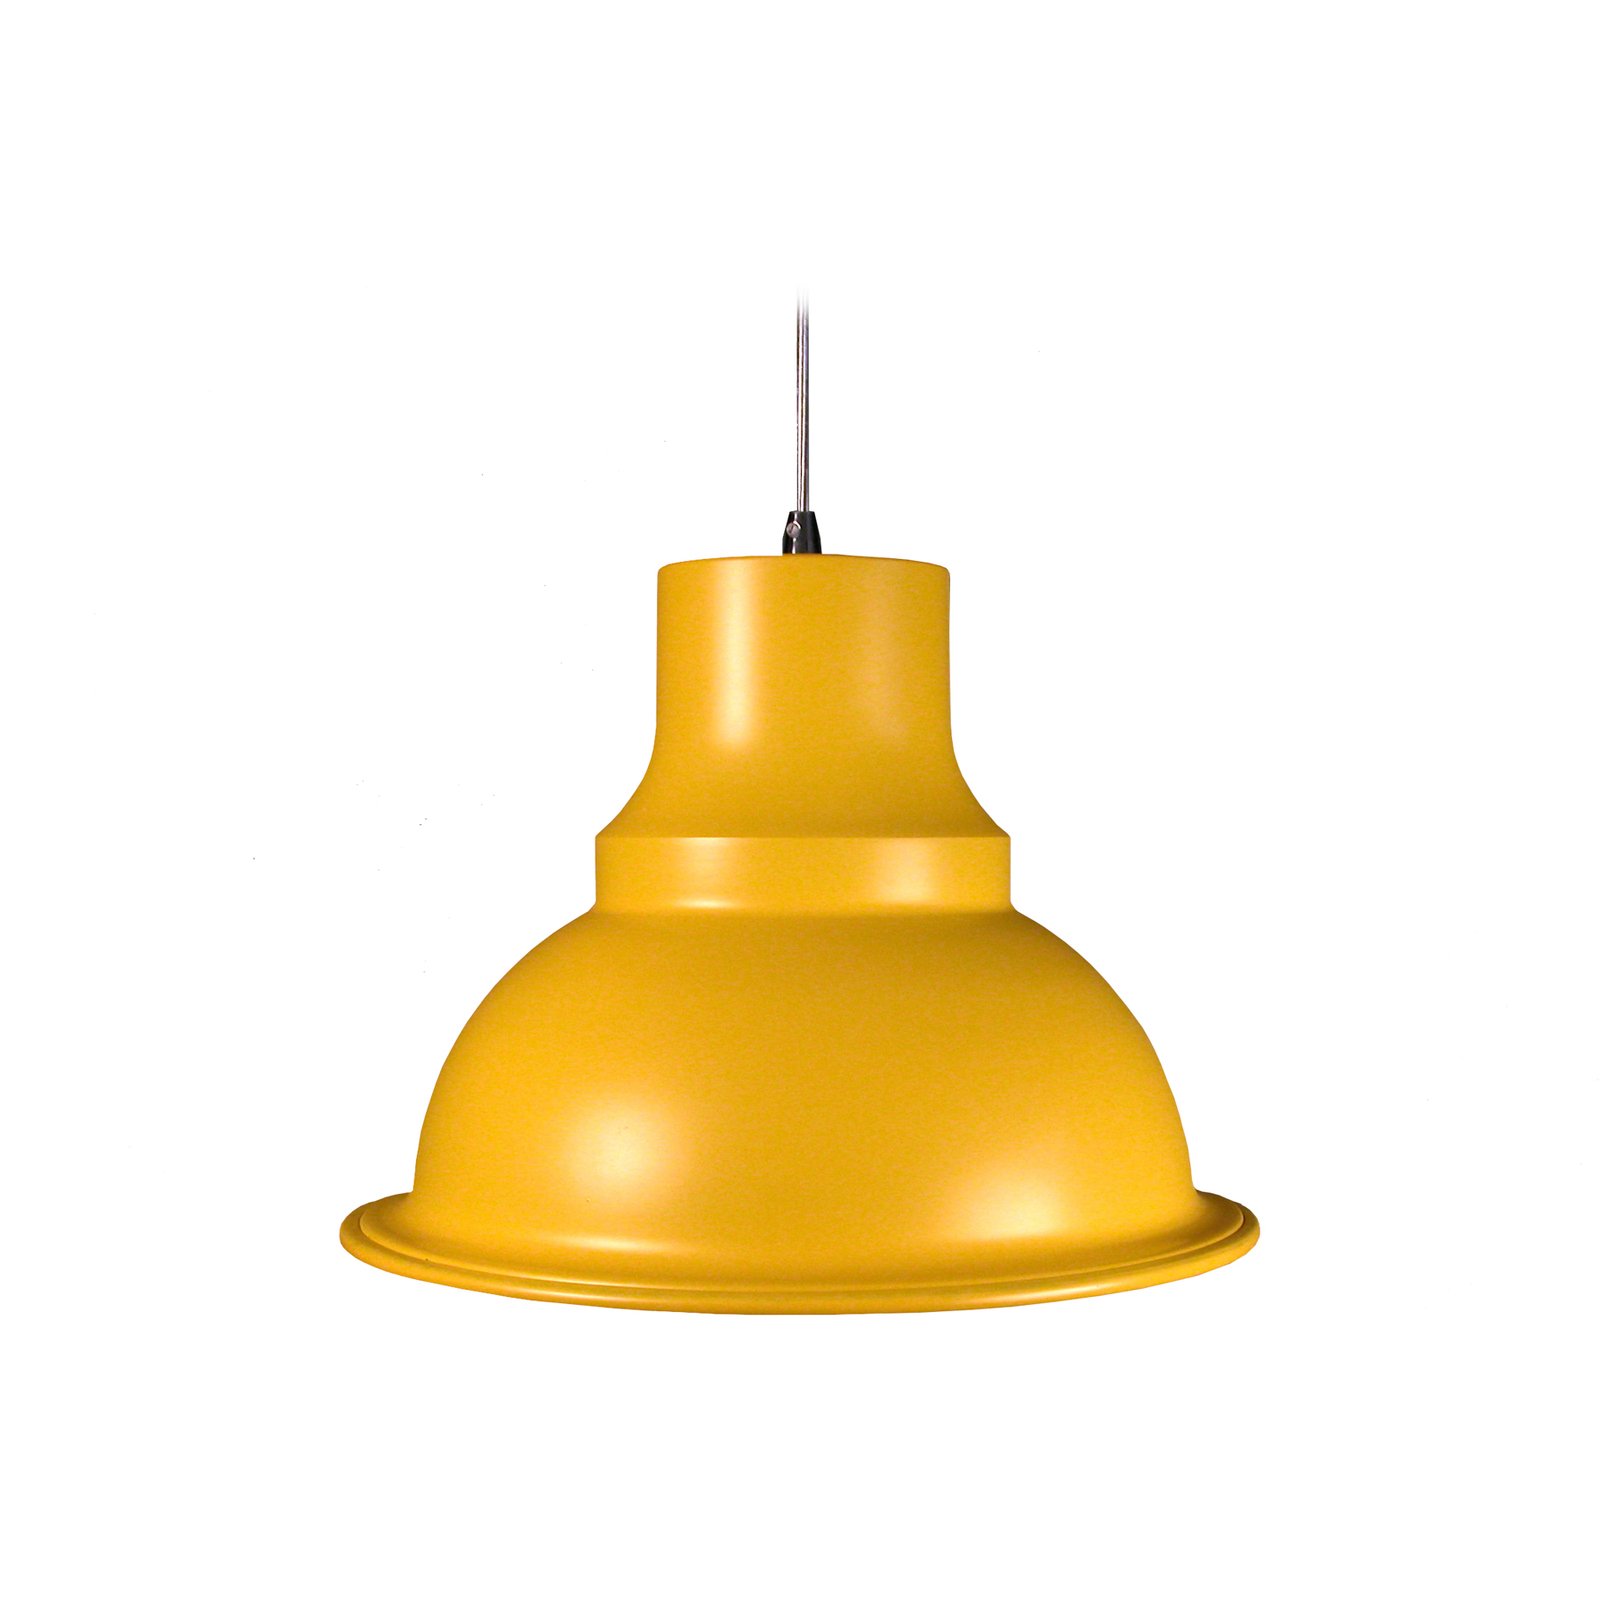 Aluminor Loft lampada sospensione, Ø 39 cm, giallo